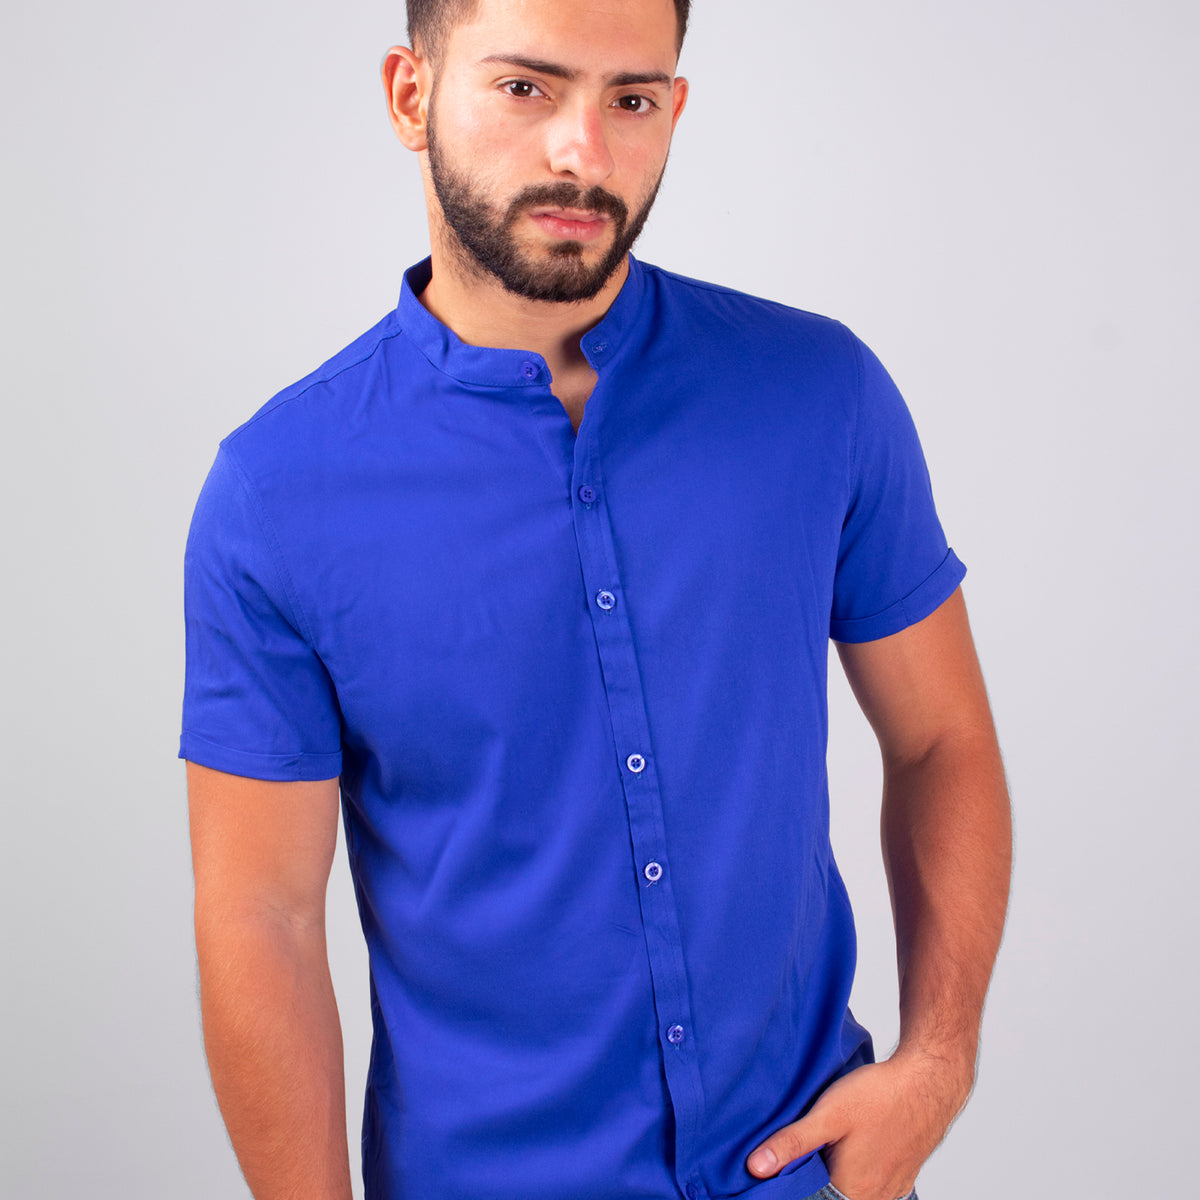 Camiseta básica con marca denominativa para hombre en azul maya